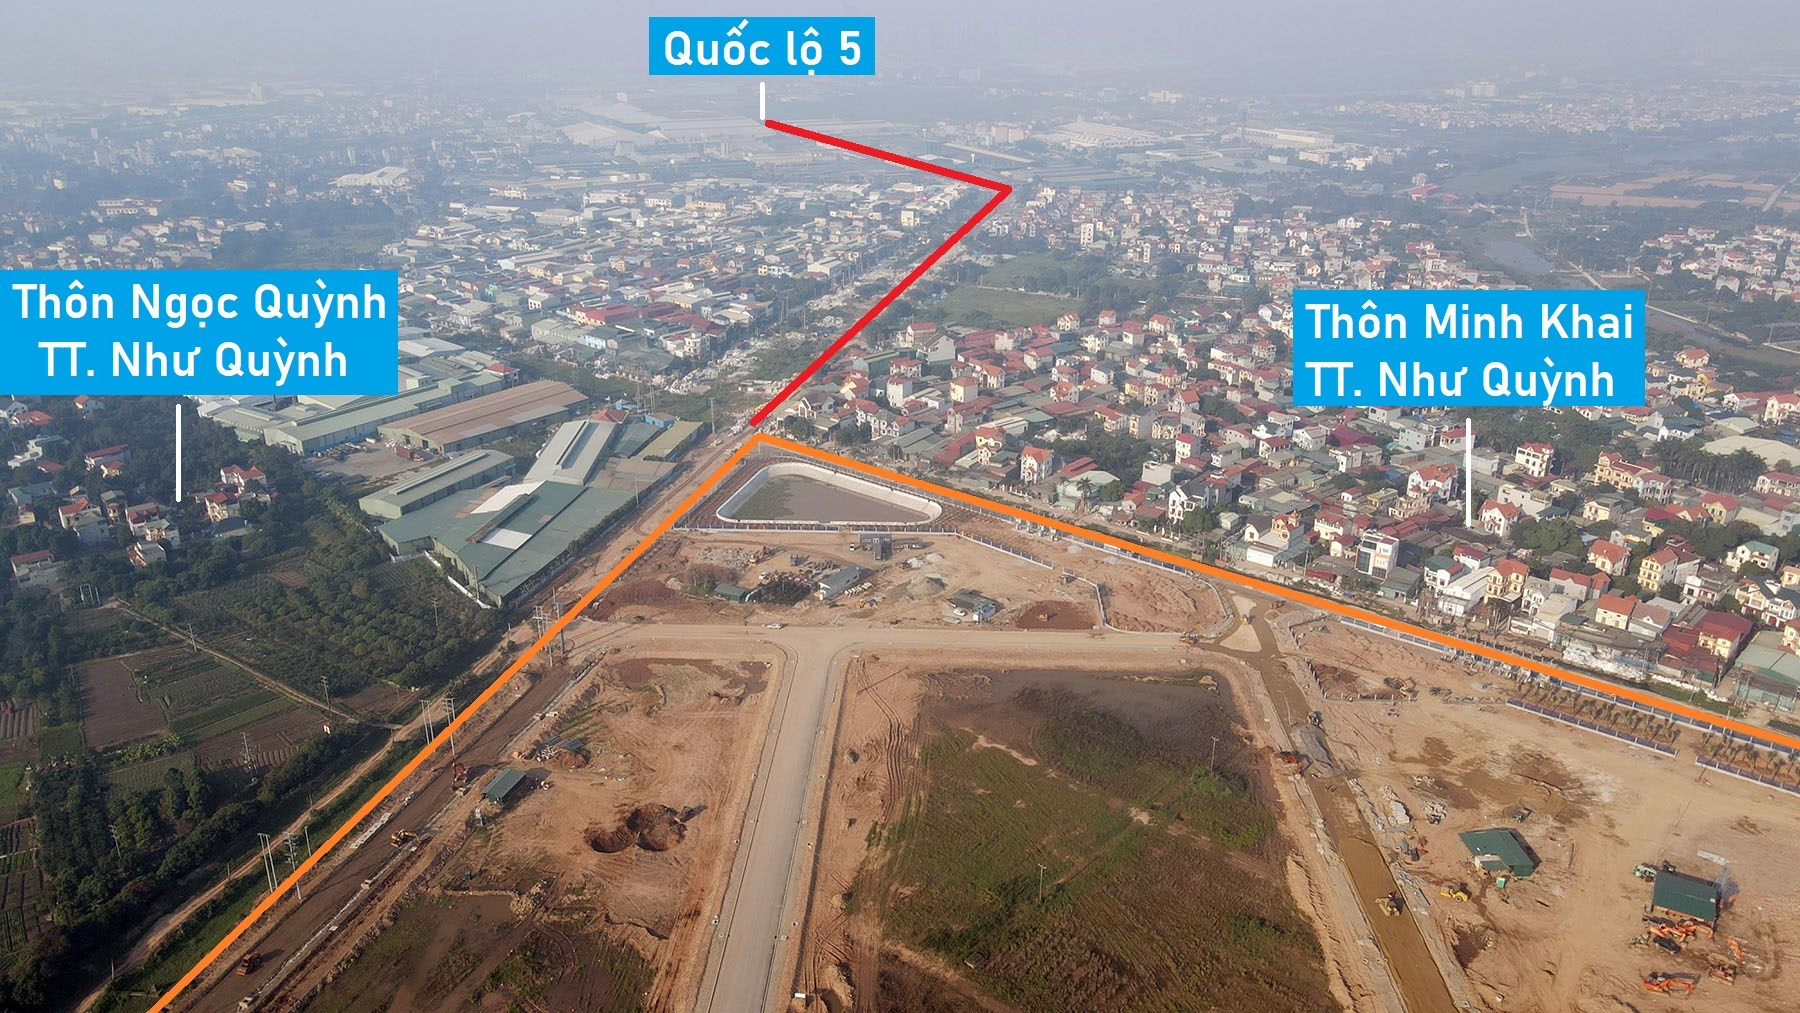 Toàn cảnh cụm công nghiệp Lạc Đạo, Minh Khai đang xây dựng ở Hưng Yên